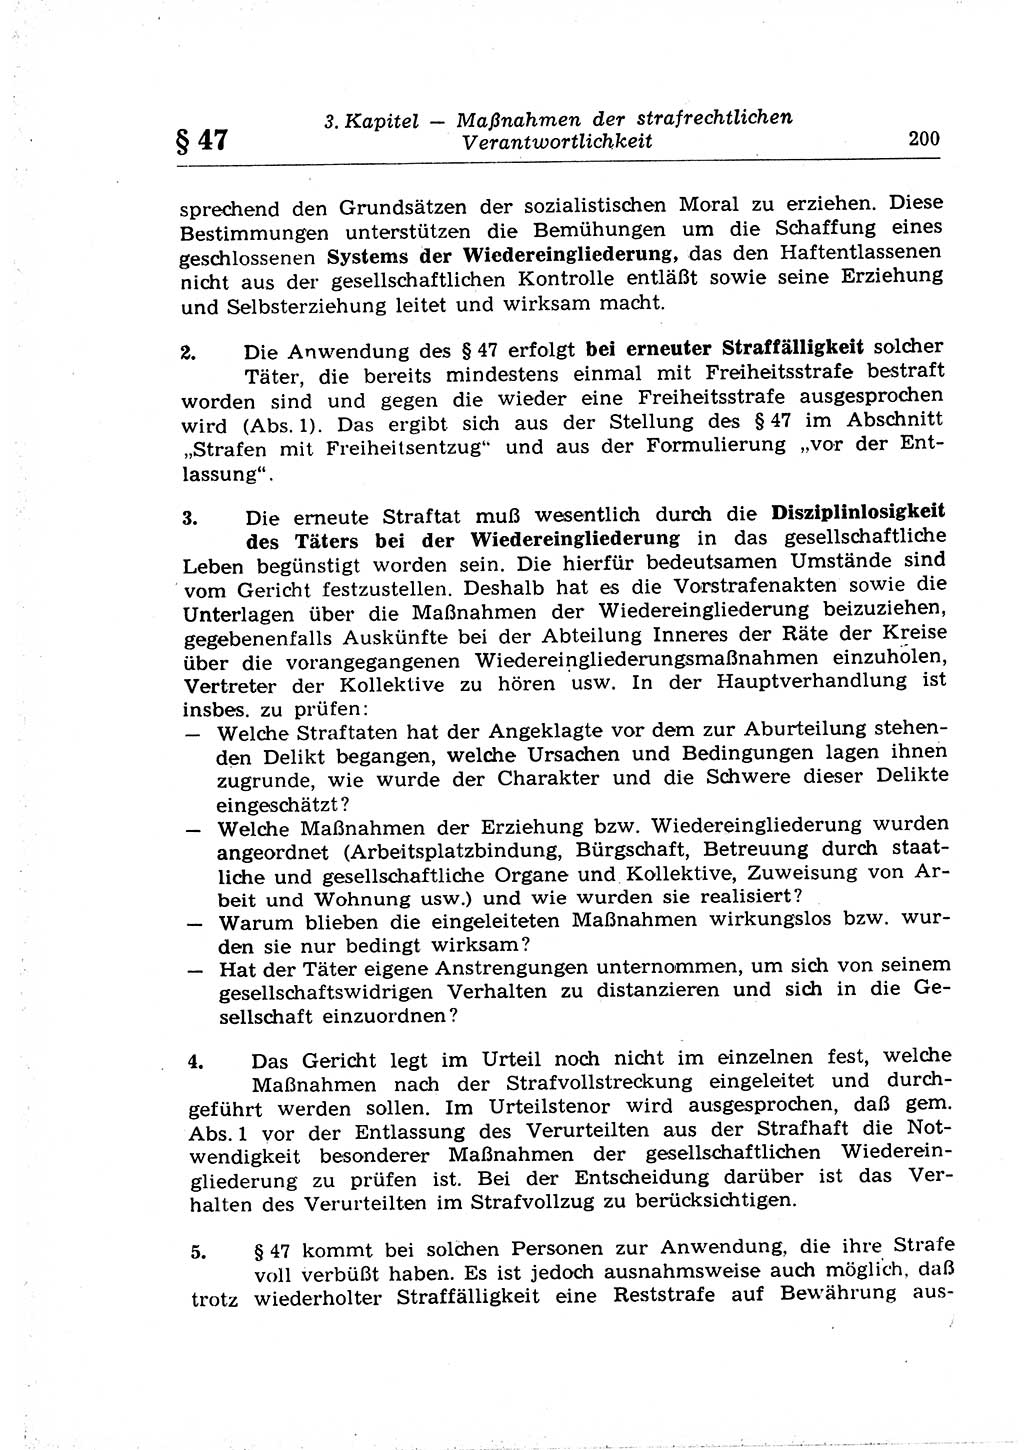 Strafrecht der Deutschen Demokratischen Republik (DDR), Lehrkommentar zum Strafgesetzbuch (StGB), Allgemeiner Teil 1969, Seite 200 (Strafr. DDR Lehrkomm. StGB AT 1969, S. 200)